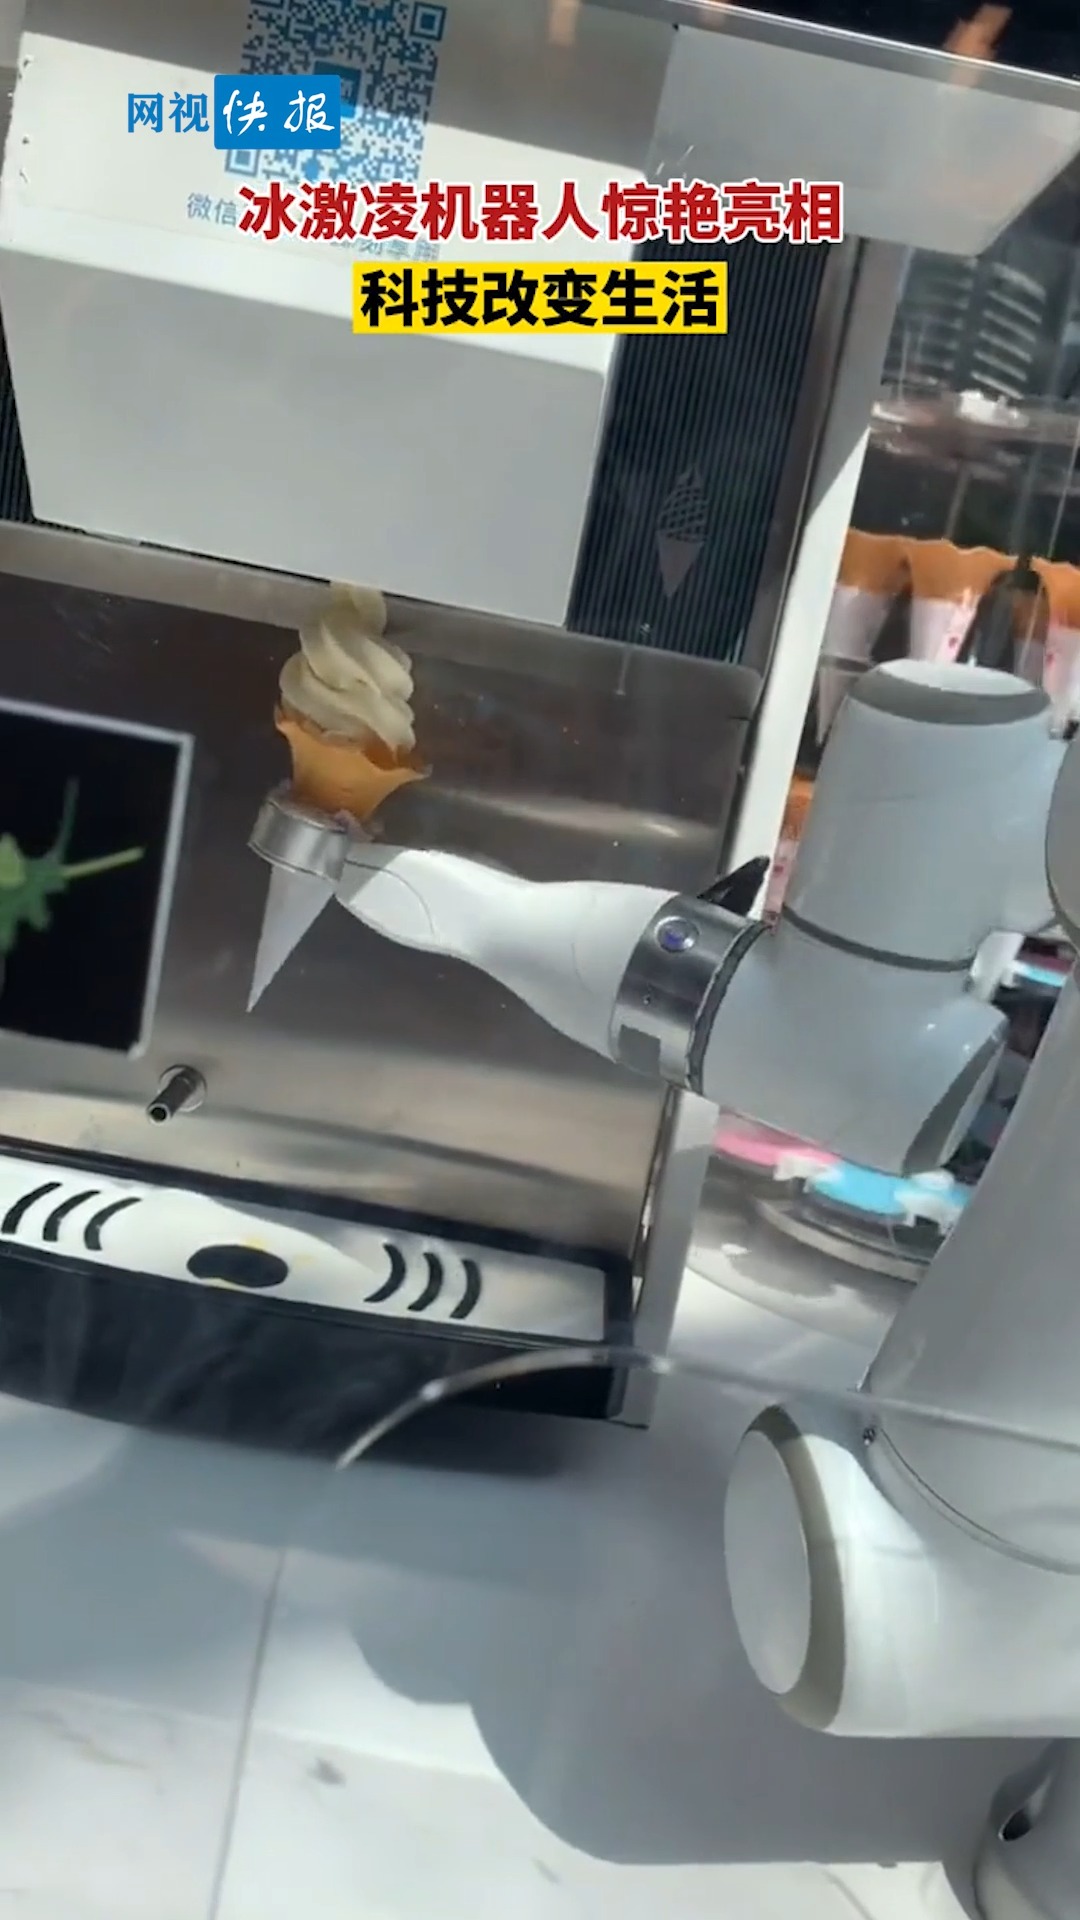 全民正能量#冰激凌机器人惊艳亮相,真是科技改变生活啊!